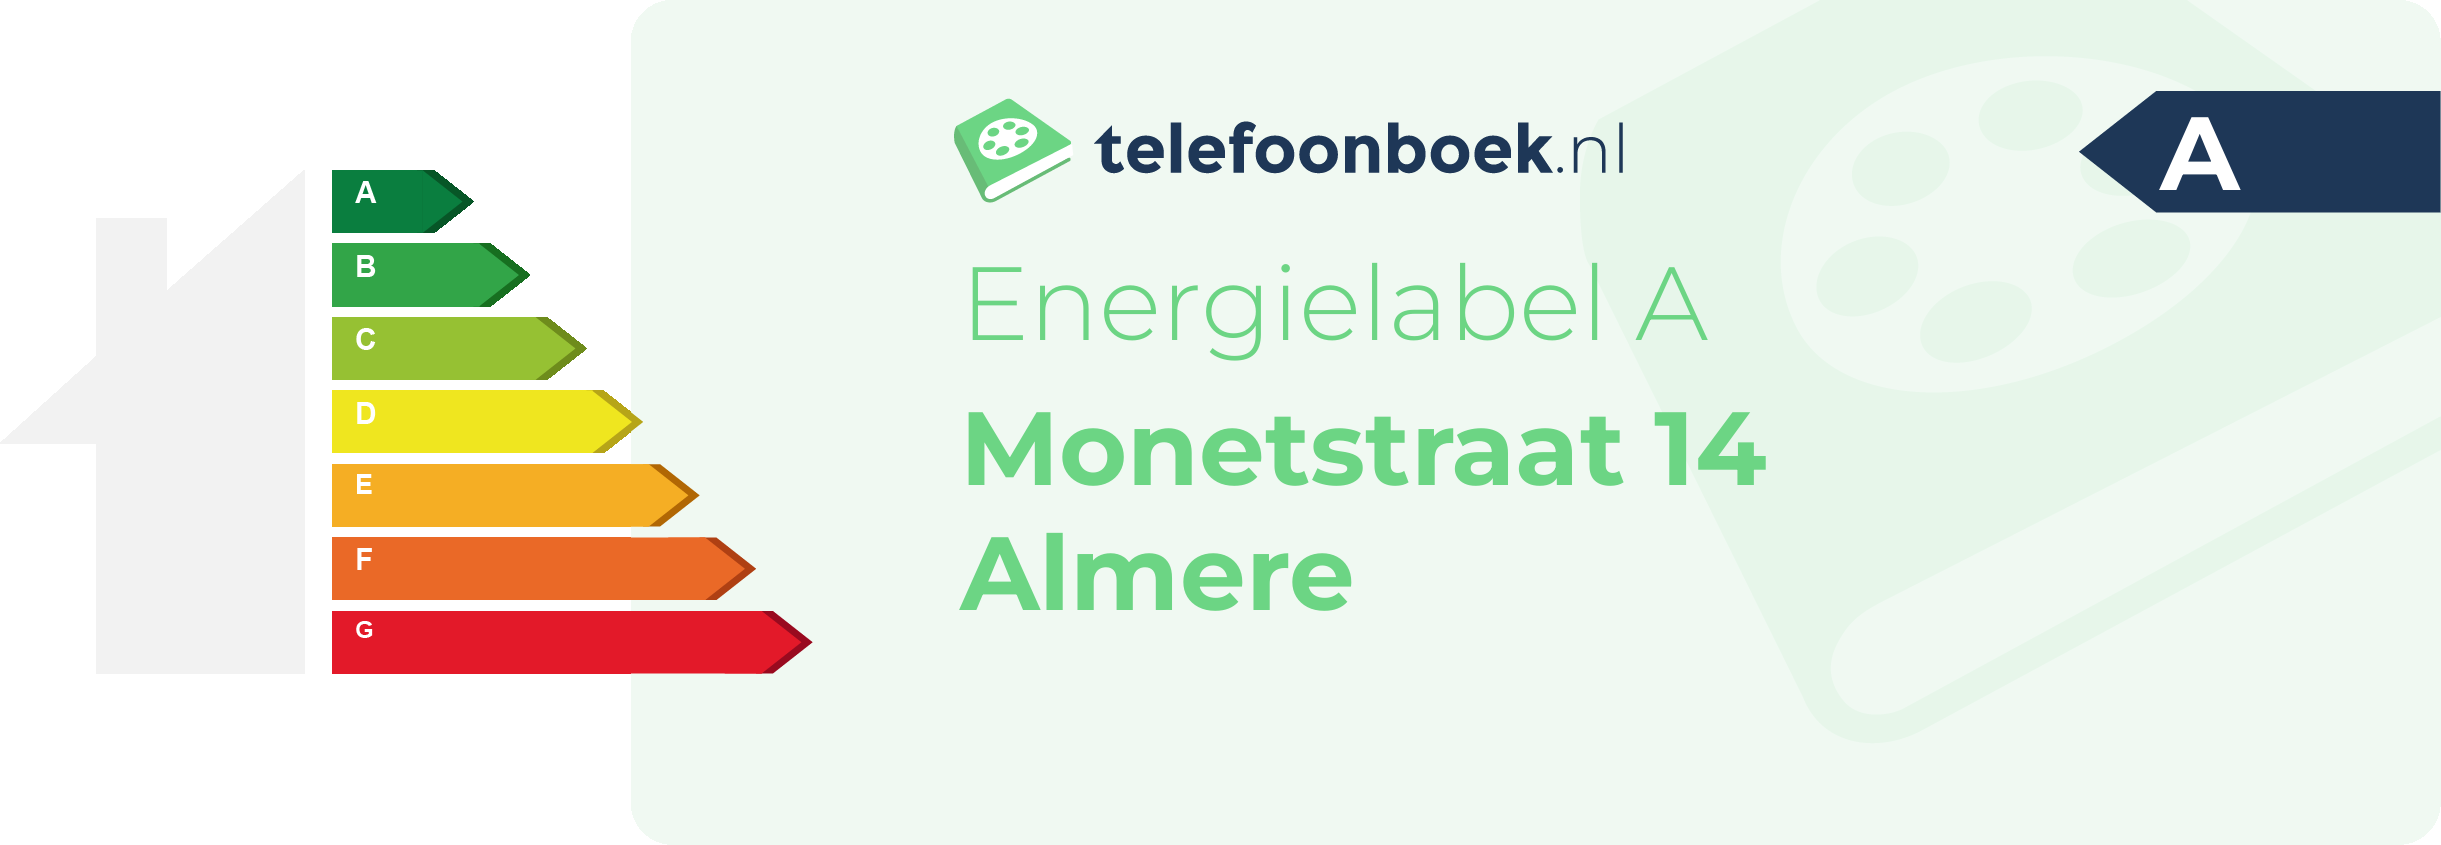 Energielabel Monetstraat 14 Almere